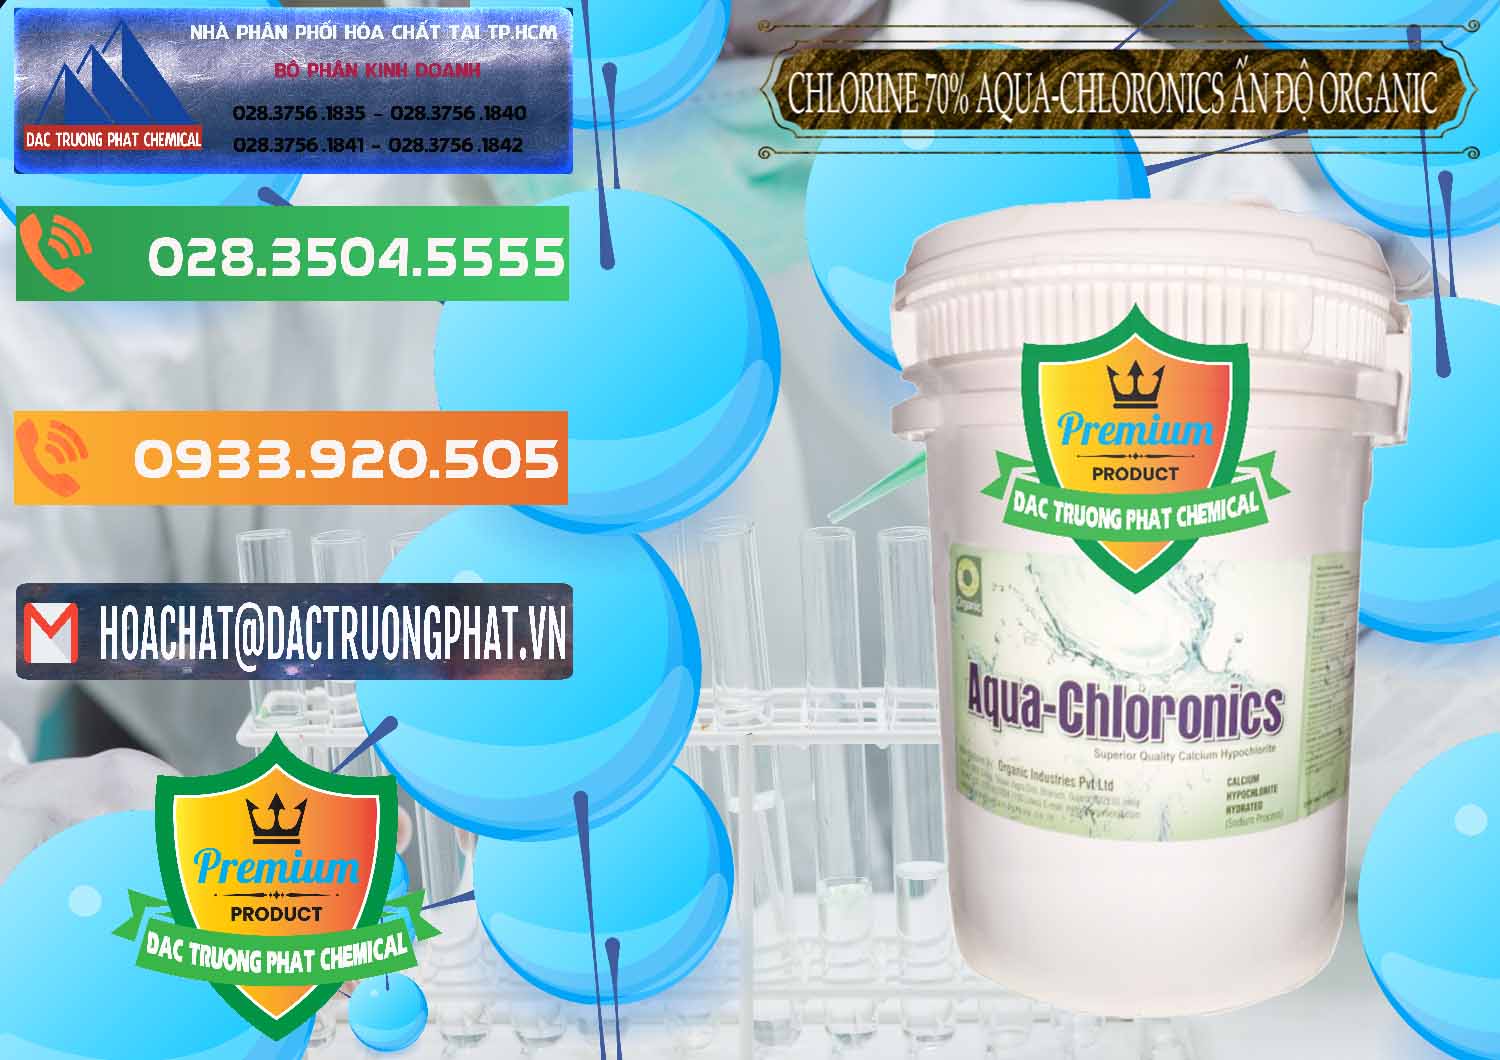 Cty chuyên cung cấp & bán Chlorine – Clorin 70% Aqua-Chloronics Ấn Độ Organic India - 0211 - Cty phân phối - kinh doanh hóa chất tại TP.HCM - hoachatxulynuoc.com.vn